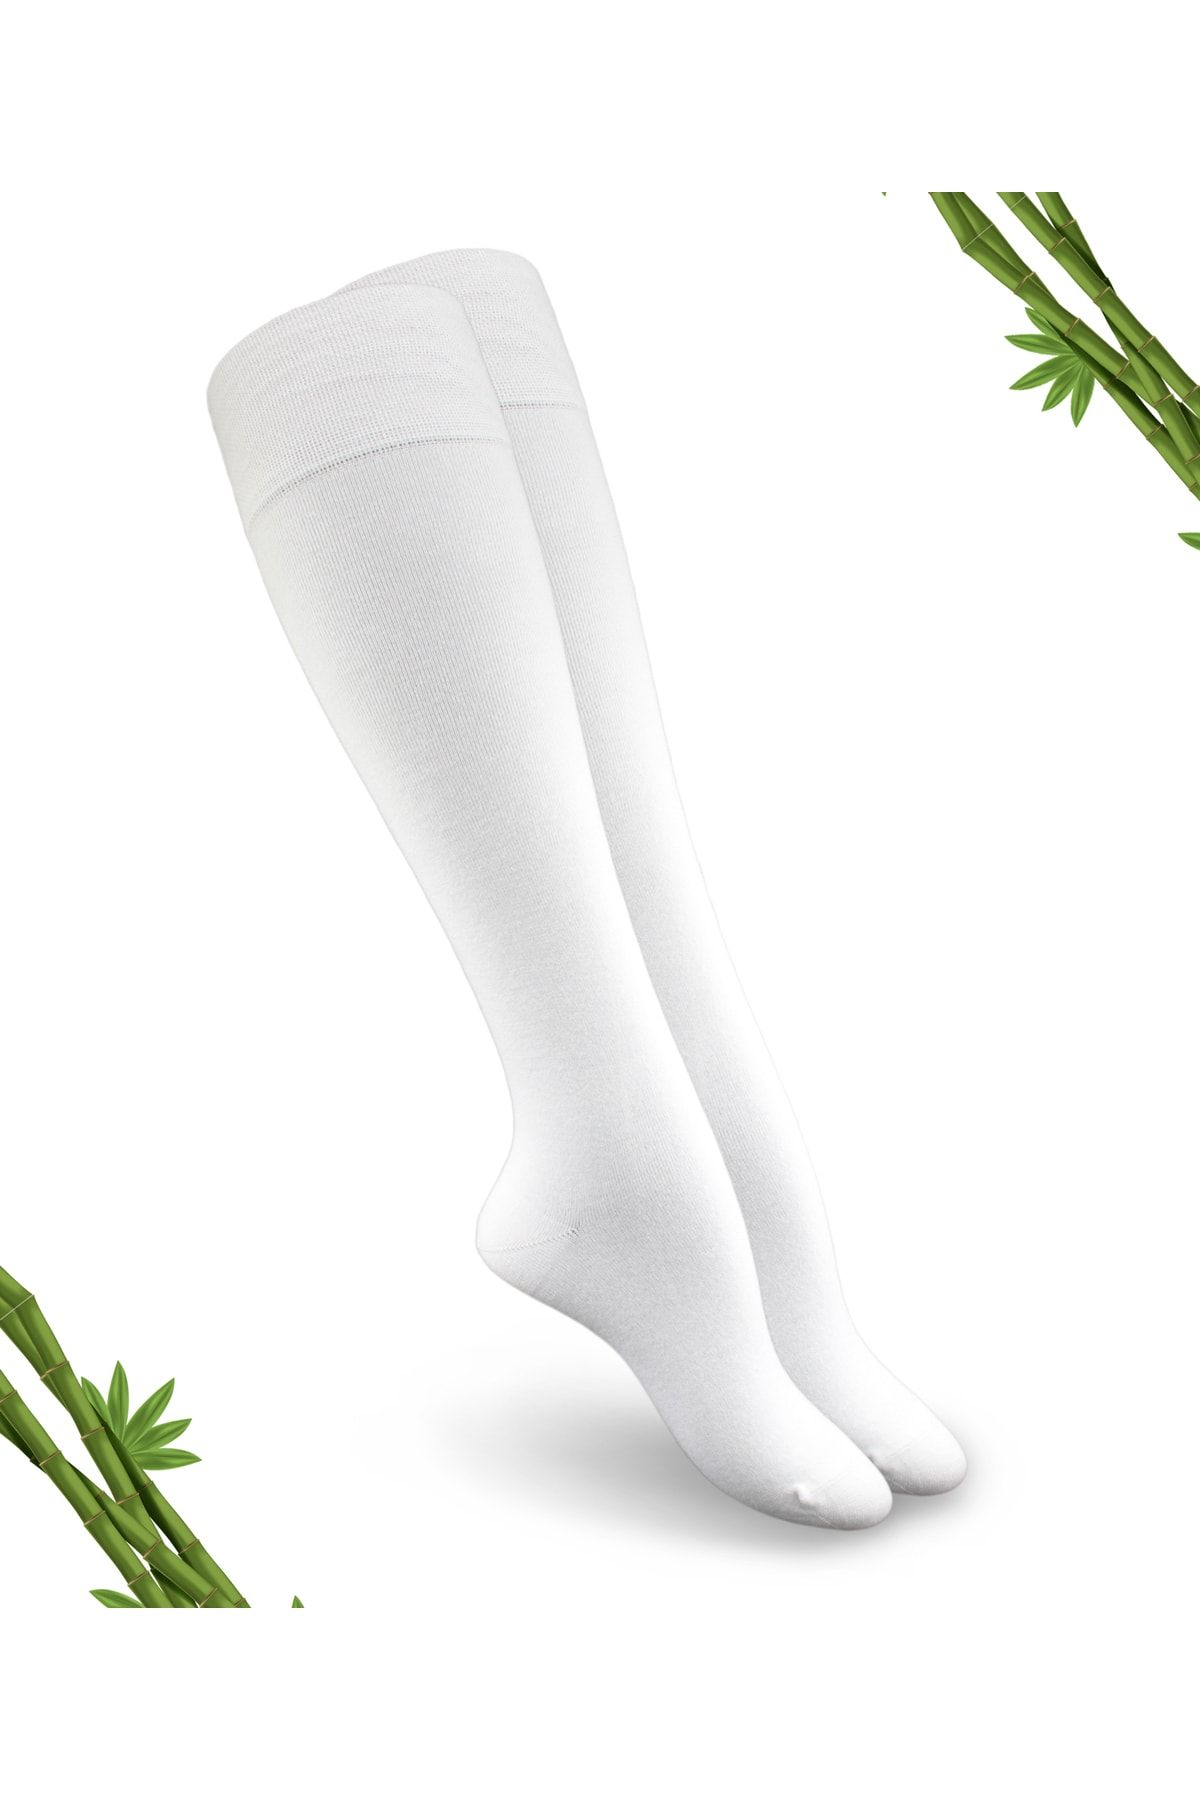 DAYCO Premium Beyaz Renk Kadın Dikişsiz Bambu Dizaltı Çorap - 390-byz - (1 ÇİFT)